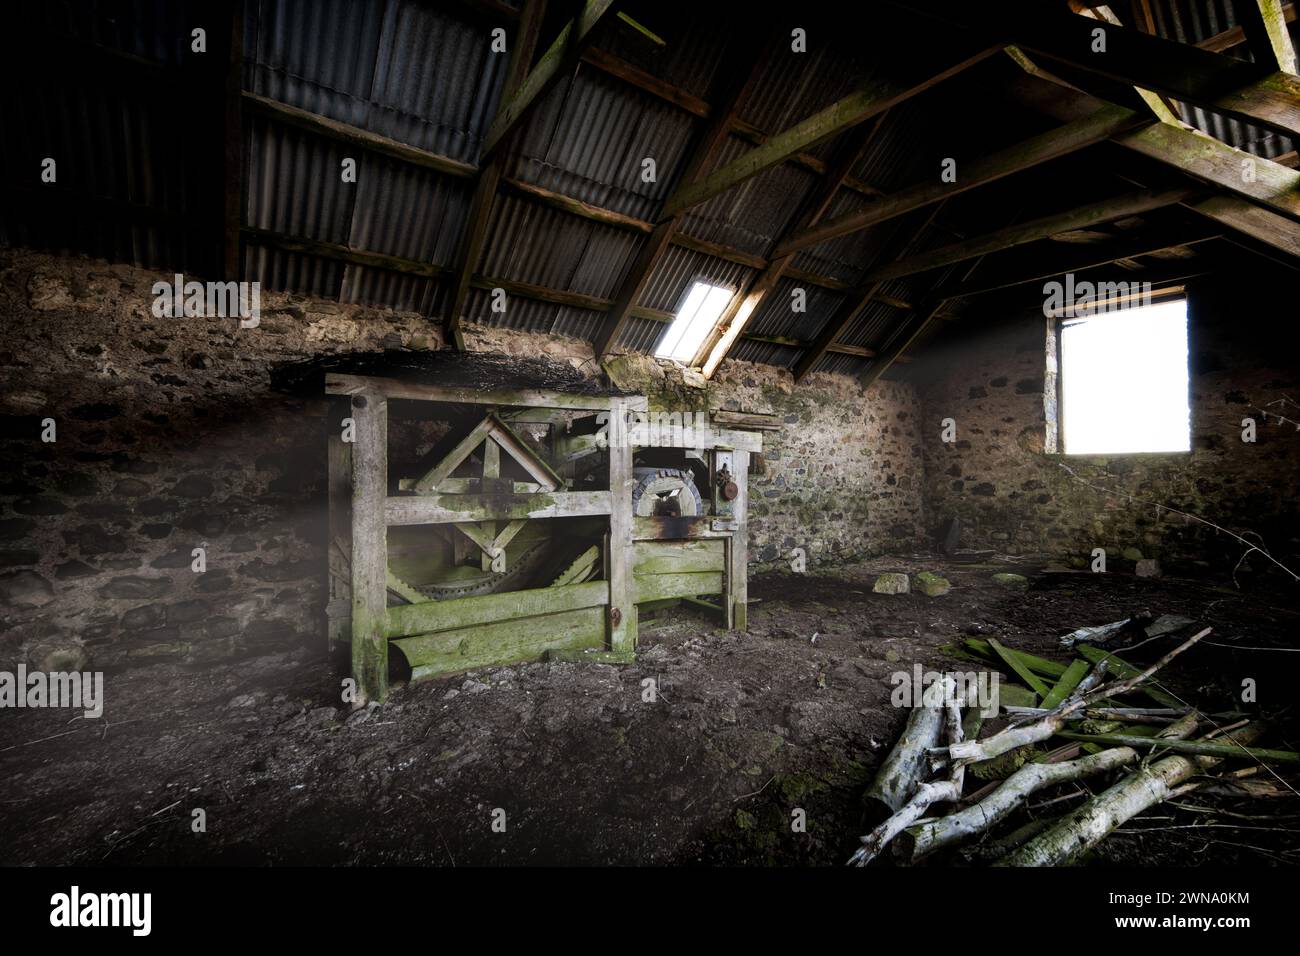 Una vecchia trebbiatrice è abbandonata e dimenticata in un vecchio fienile sulle colline delle Highlands scozzesi Foto Stock